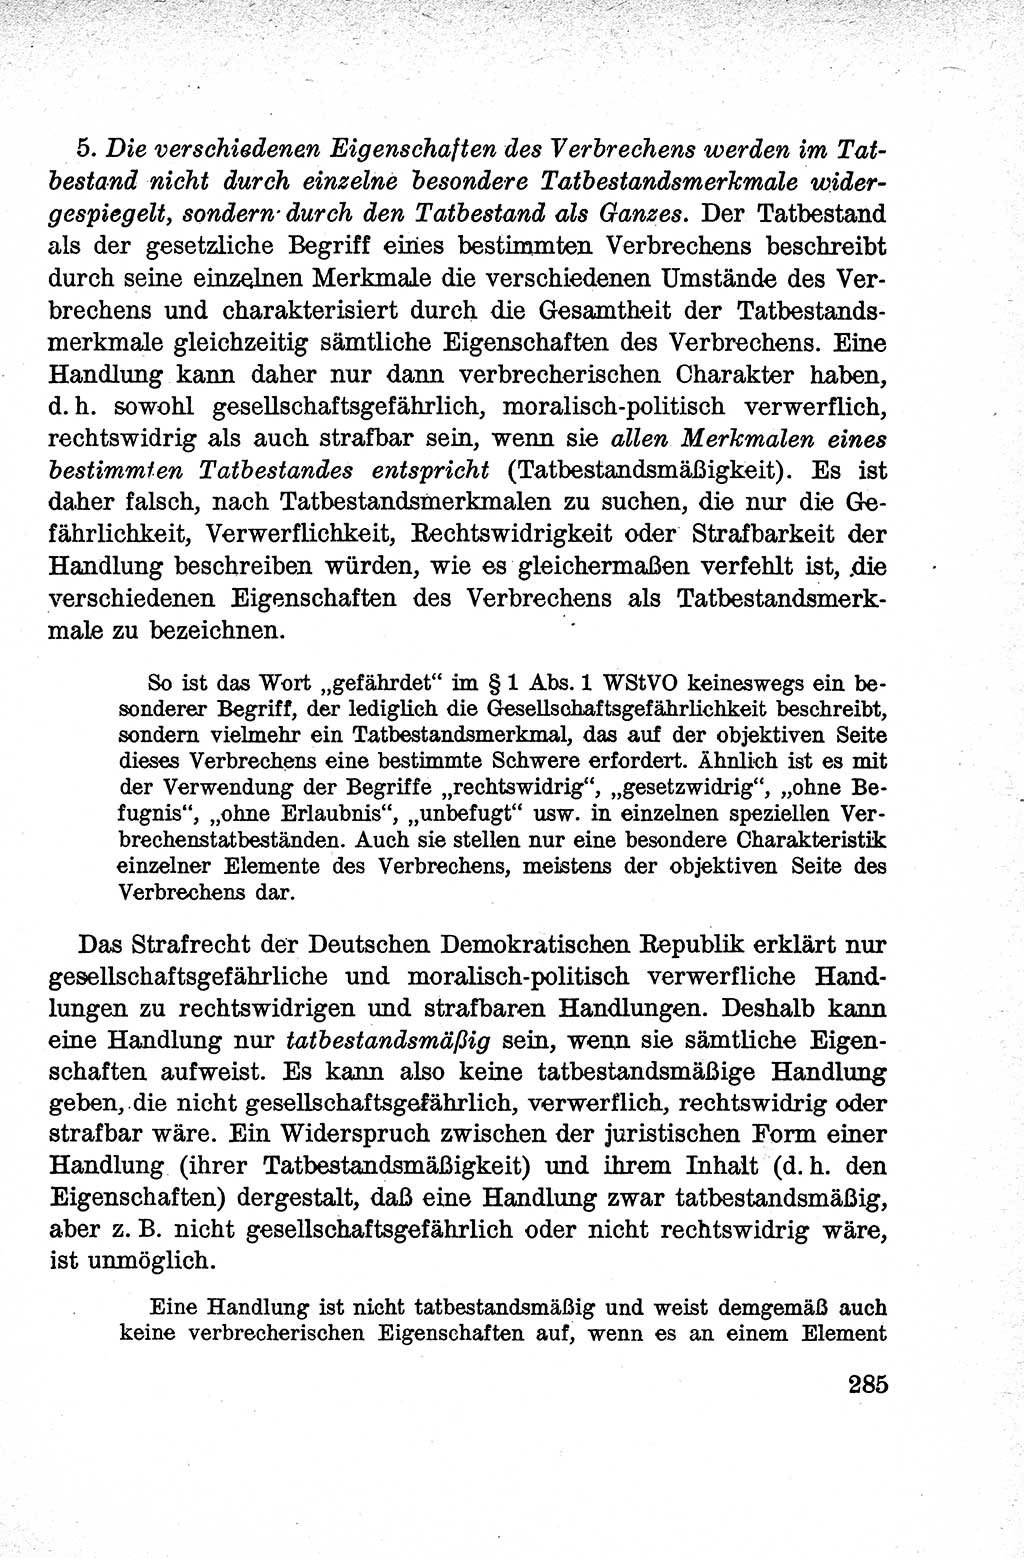 Lehrbuch des Strafrechts der Deutschen Demokratischen Republik (DDR), Allgemeiner Teil 1959, Seite 285 (Lb. Strafr. DDR AT 1959, S. 285)